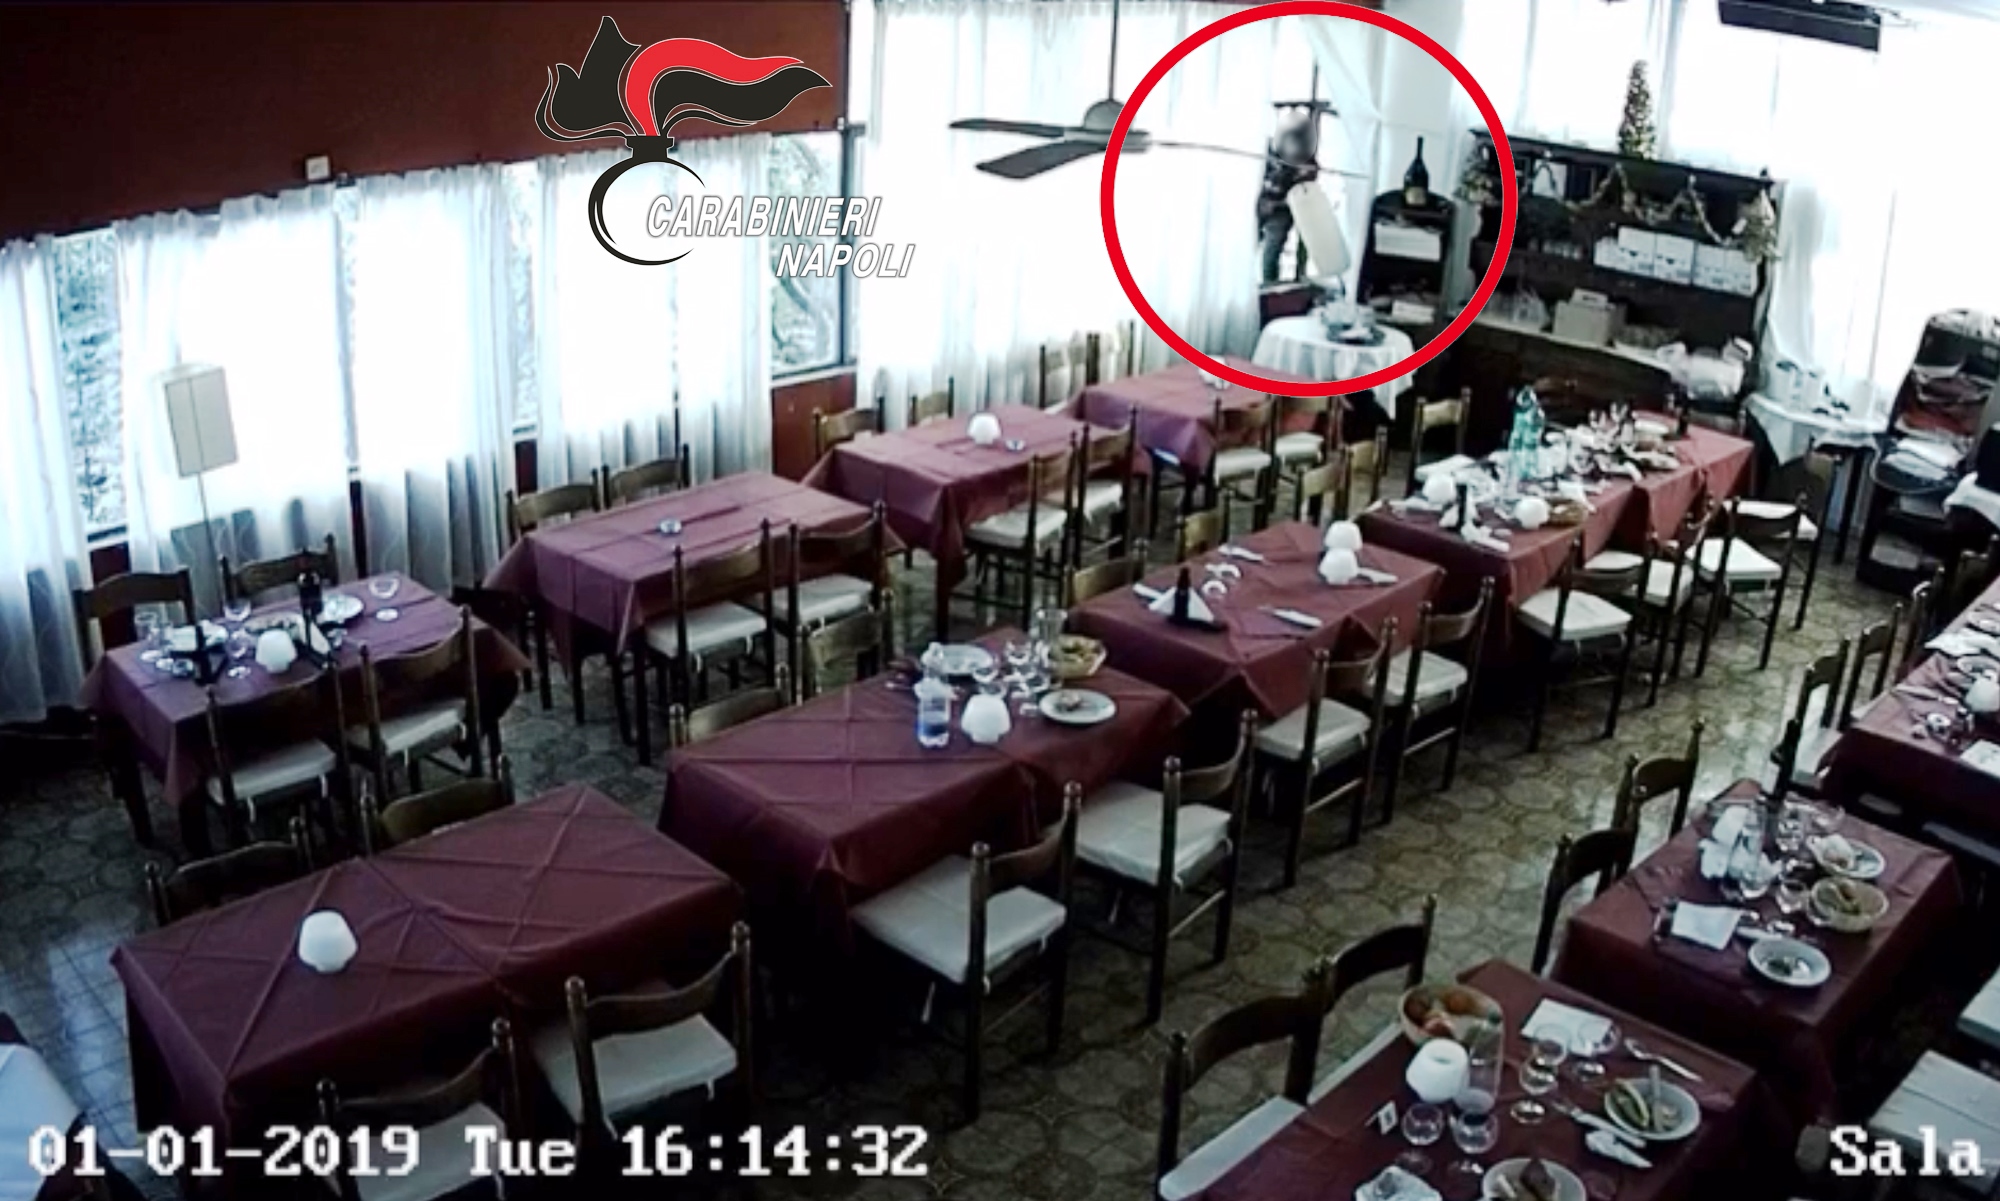 Pompei, ruba due volte nello stesso ristorante: immortalato dalle telecamere, migrante fermato dai carabinieri